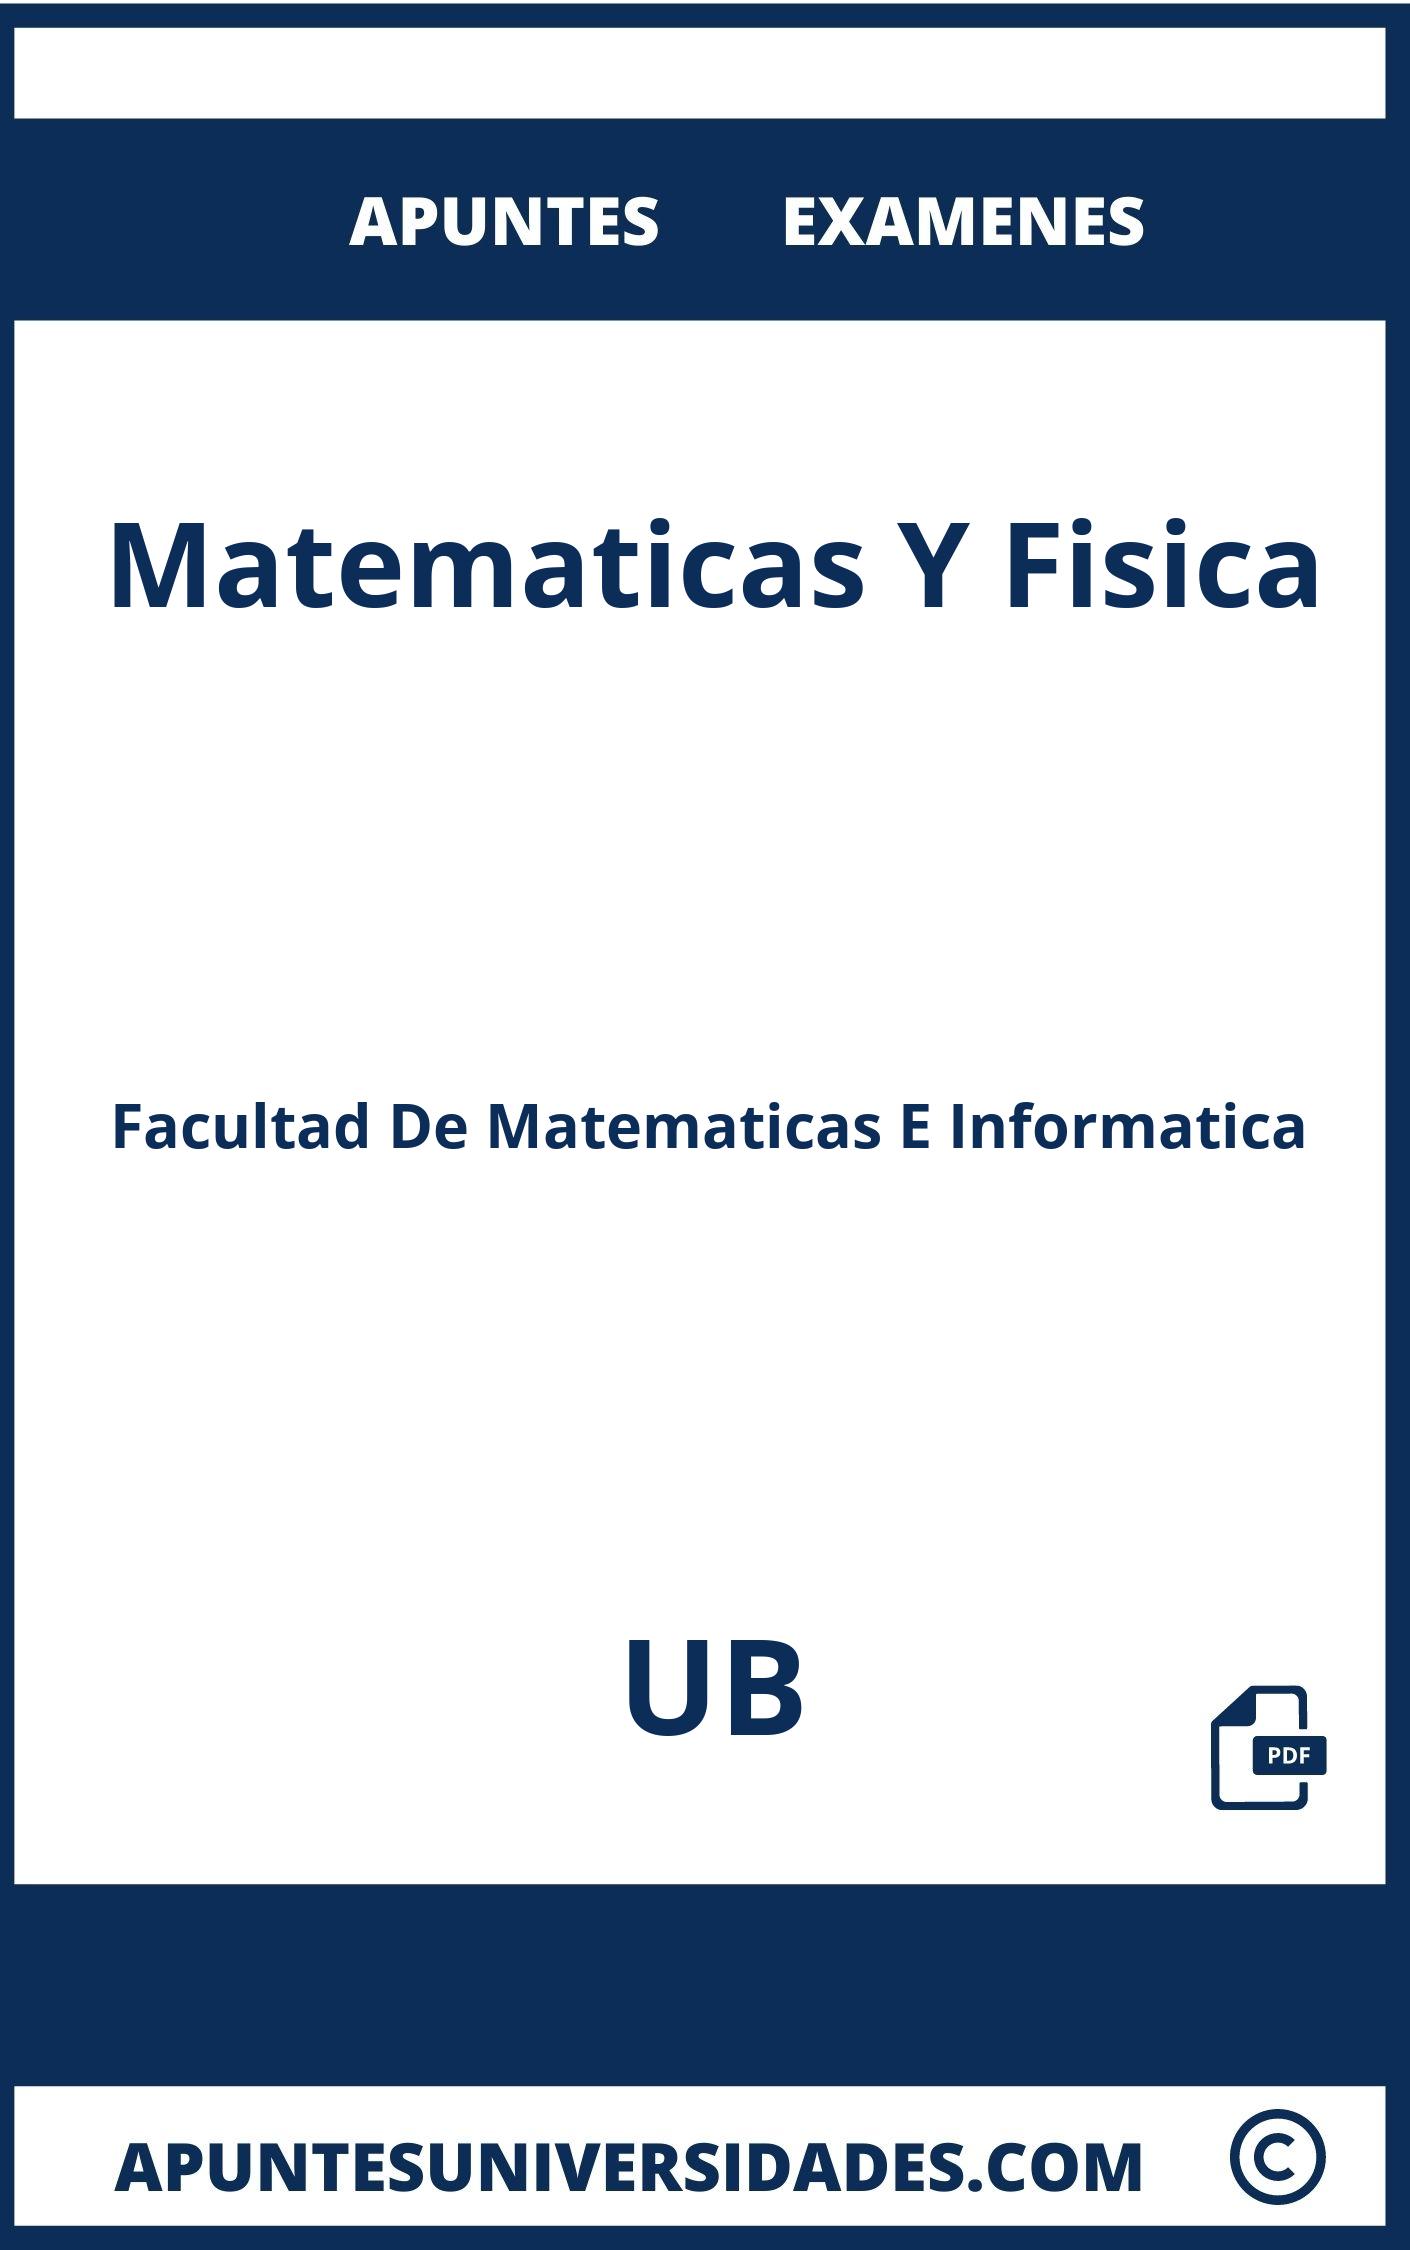 Apuntes Examenes Matematicas Y Fisica UB